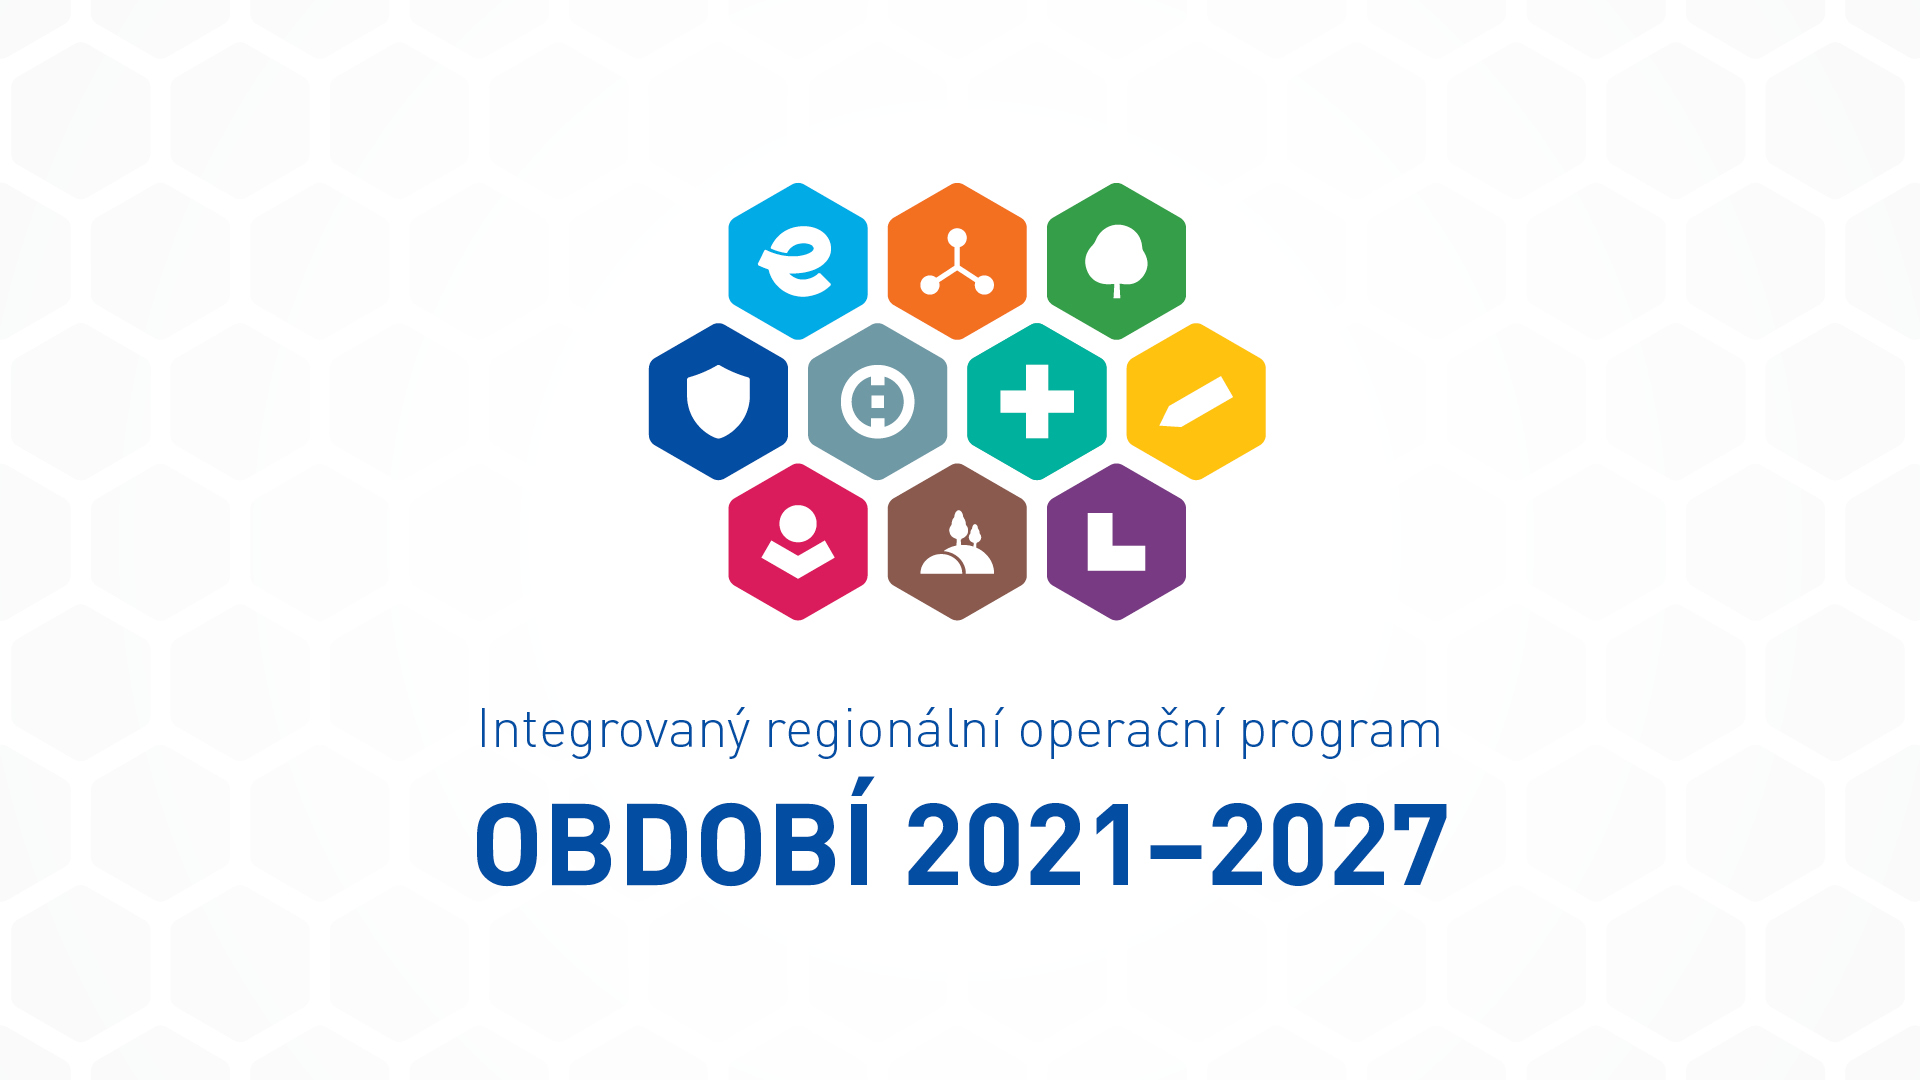 Užitečné informace před vyhlášením výzev IROP 2021-2027